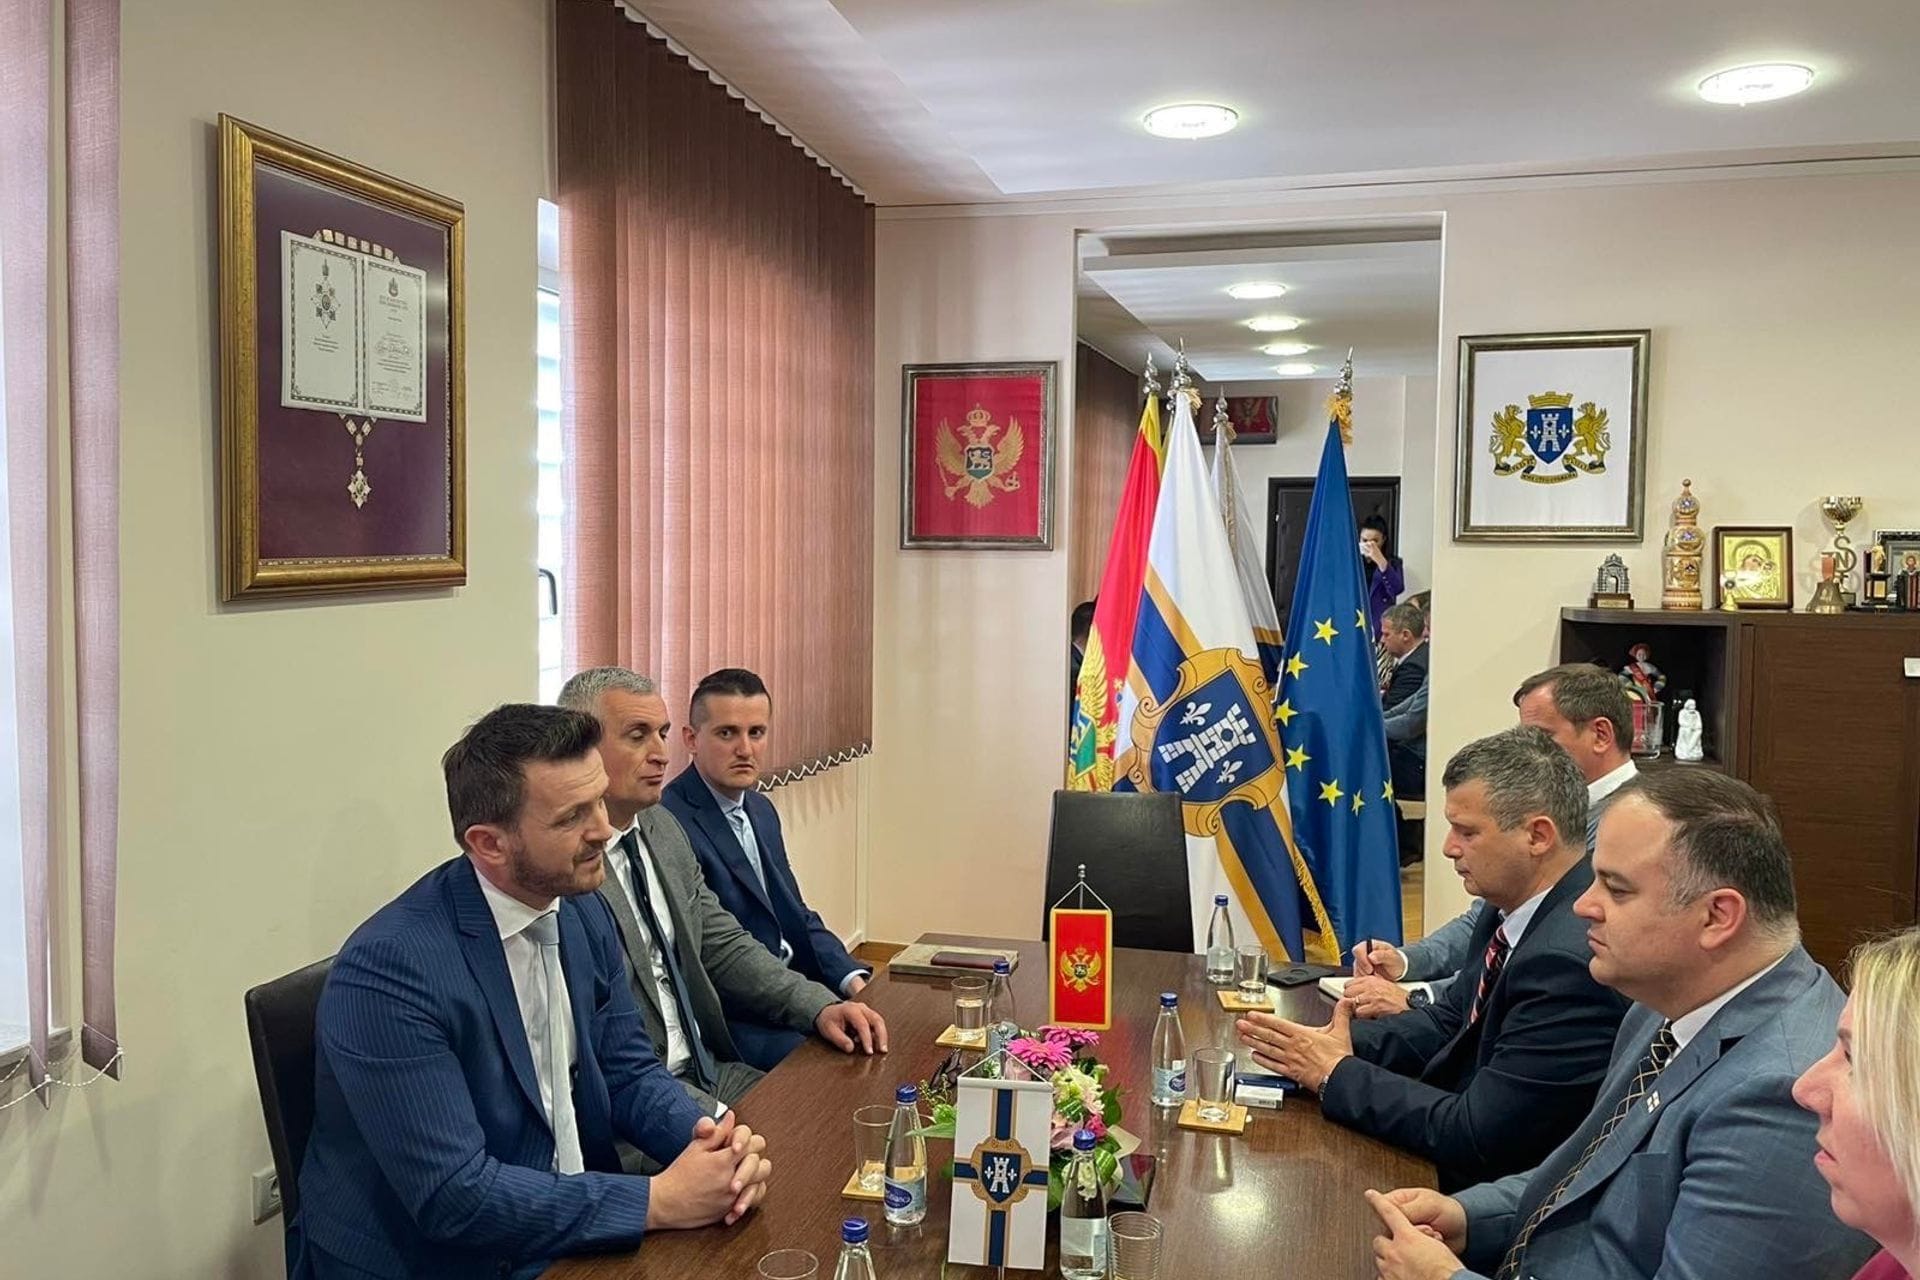 Ministar javne uprave, mr Marash Dukaj, sa saradnicima, boravio je danas u radnoj posjeti opštini Herceg Novi